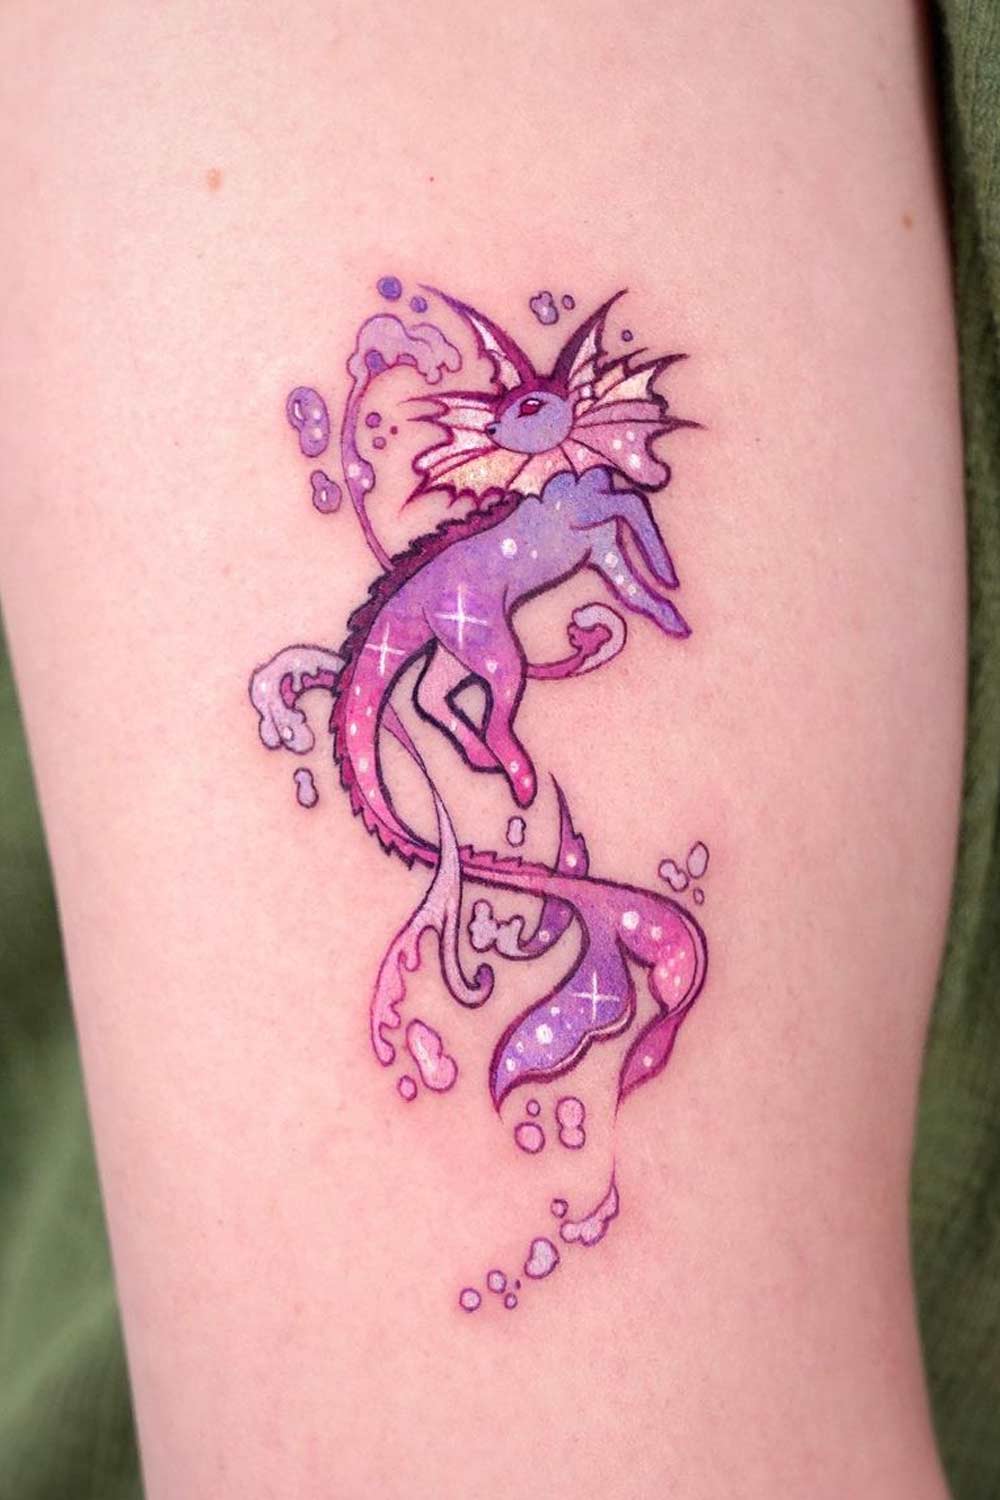 Shiny Vaporeon Tattoo